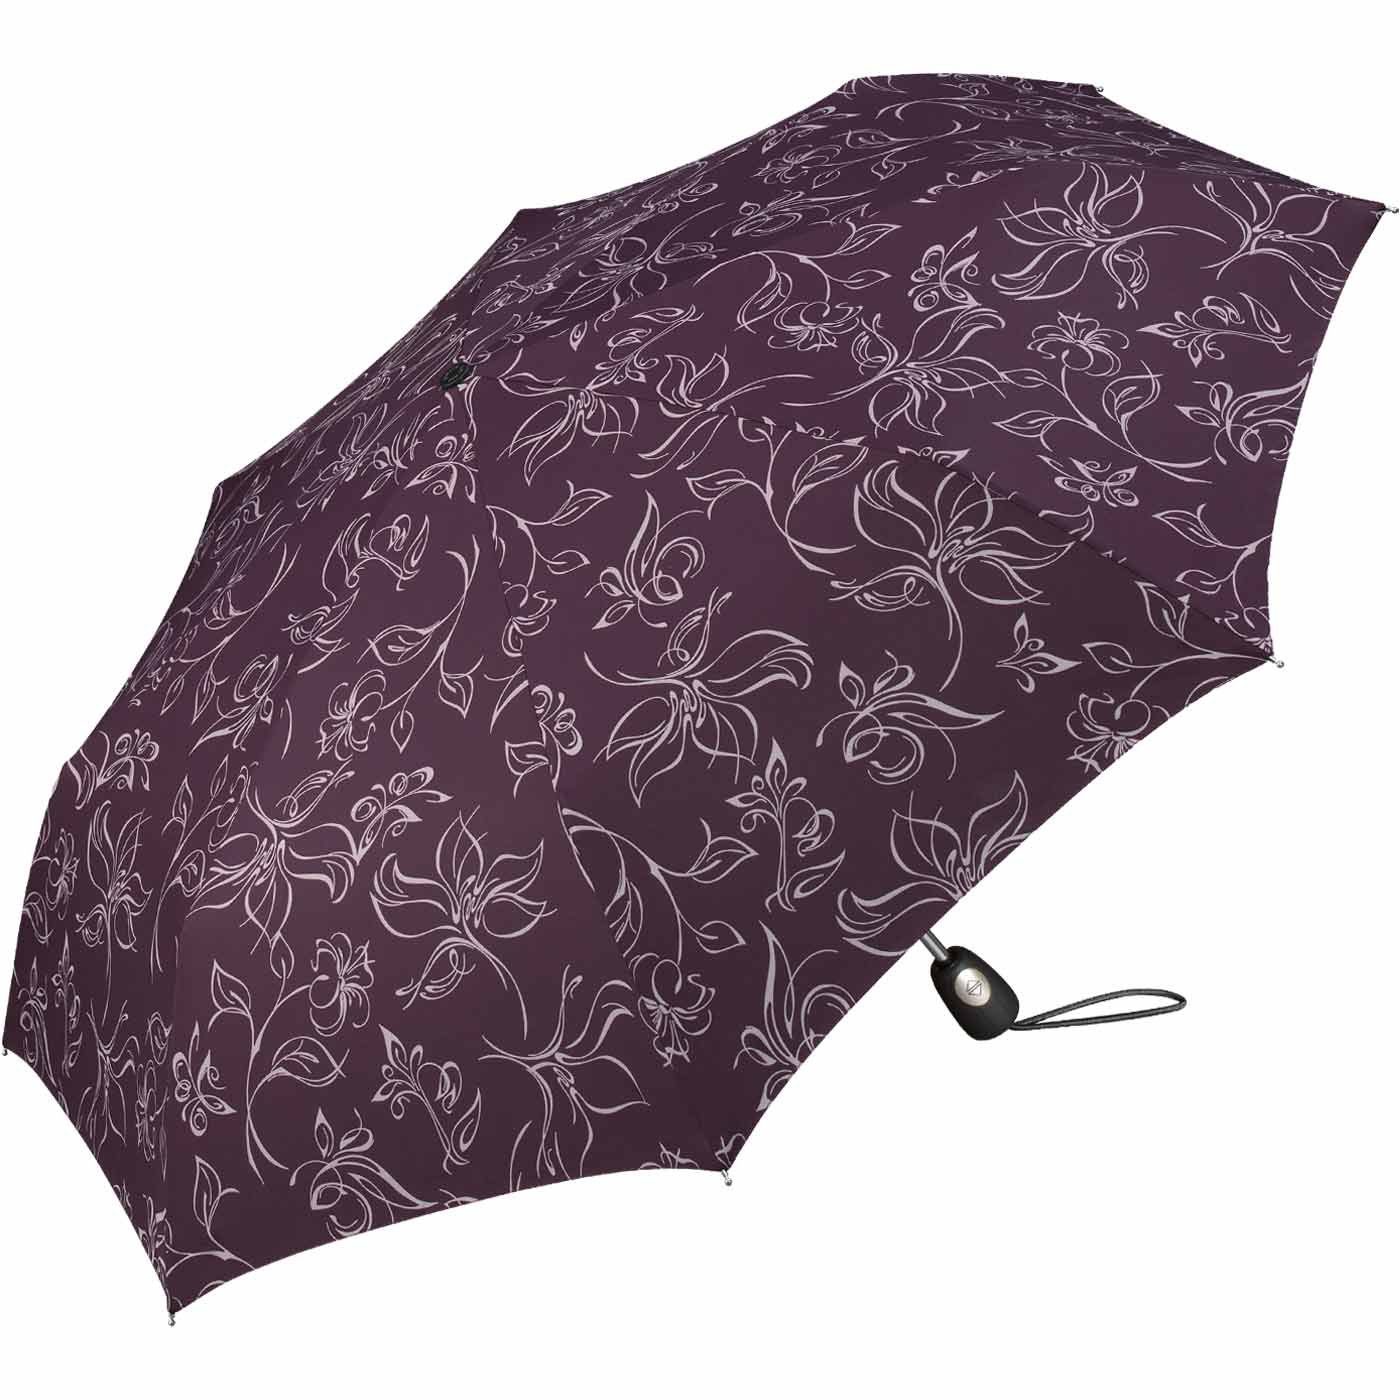 Damen-Regenschirm Pierre Taschenregenschirm schöner Blumenskizzen mit mit Cardin wunderschönen Auf-Zu-Automatik, weiß-bordeauxrot